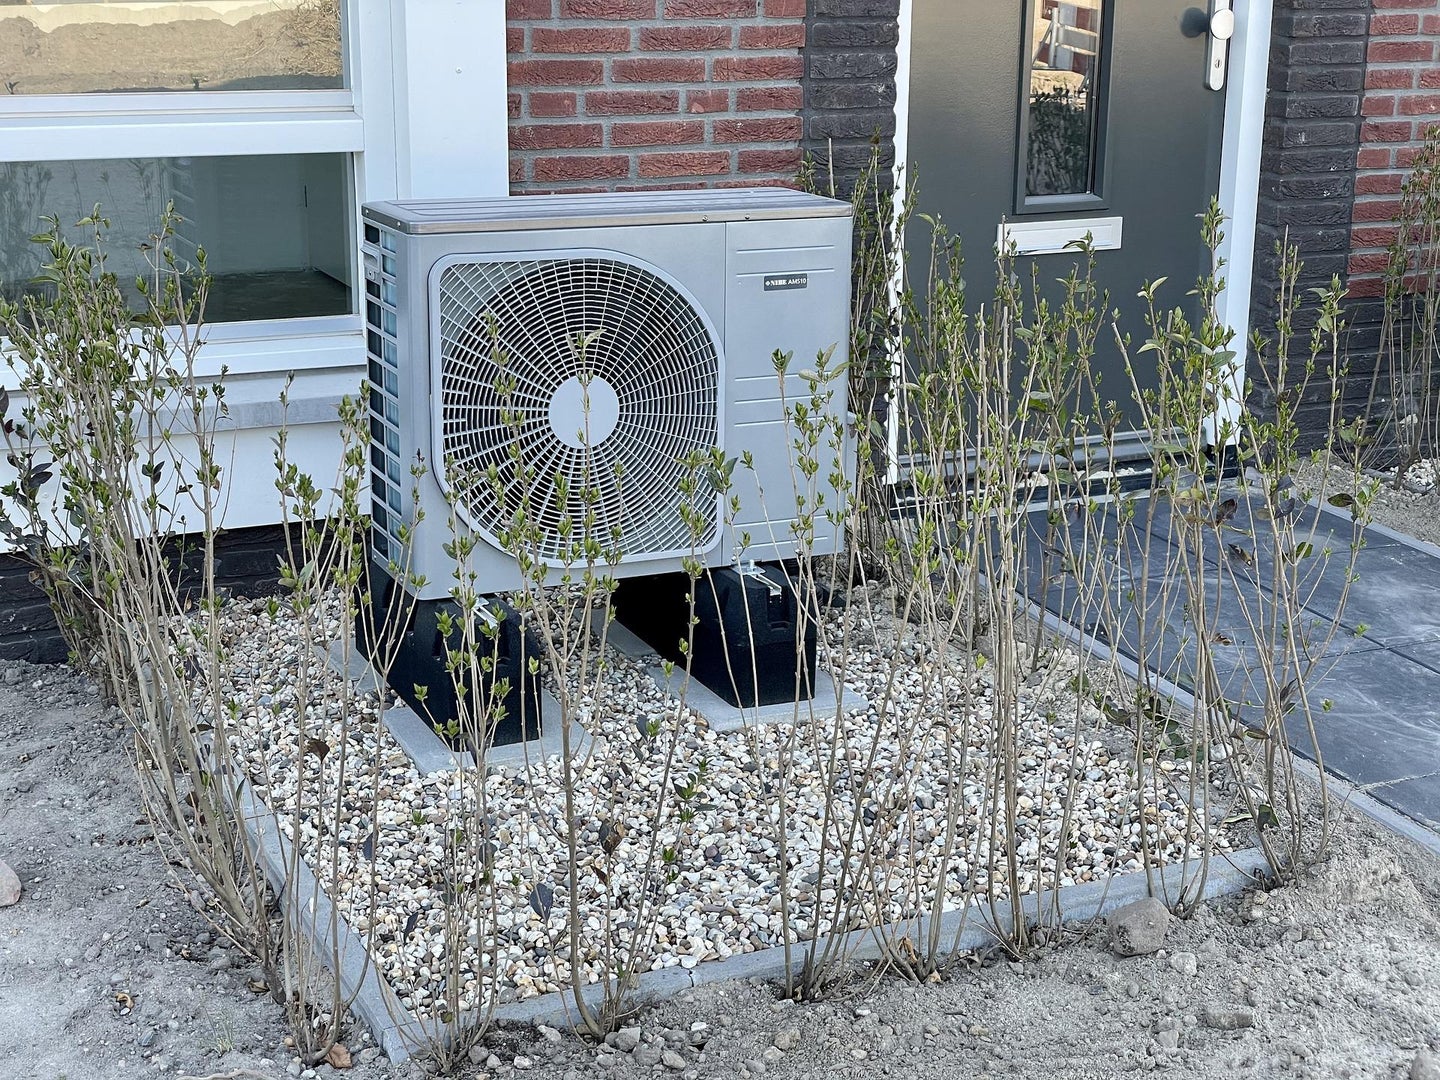 Outdoor unit of heat pump